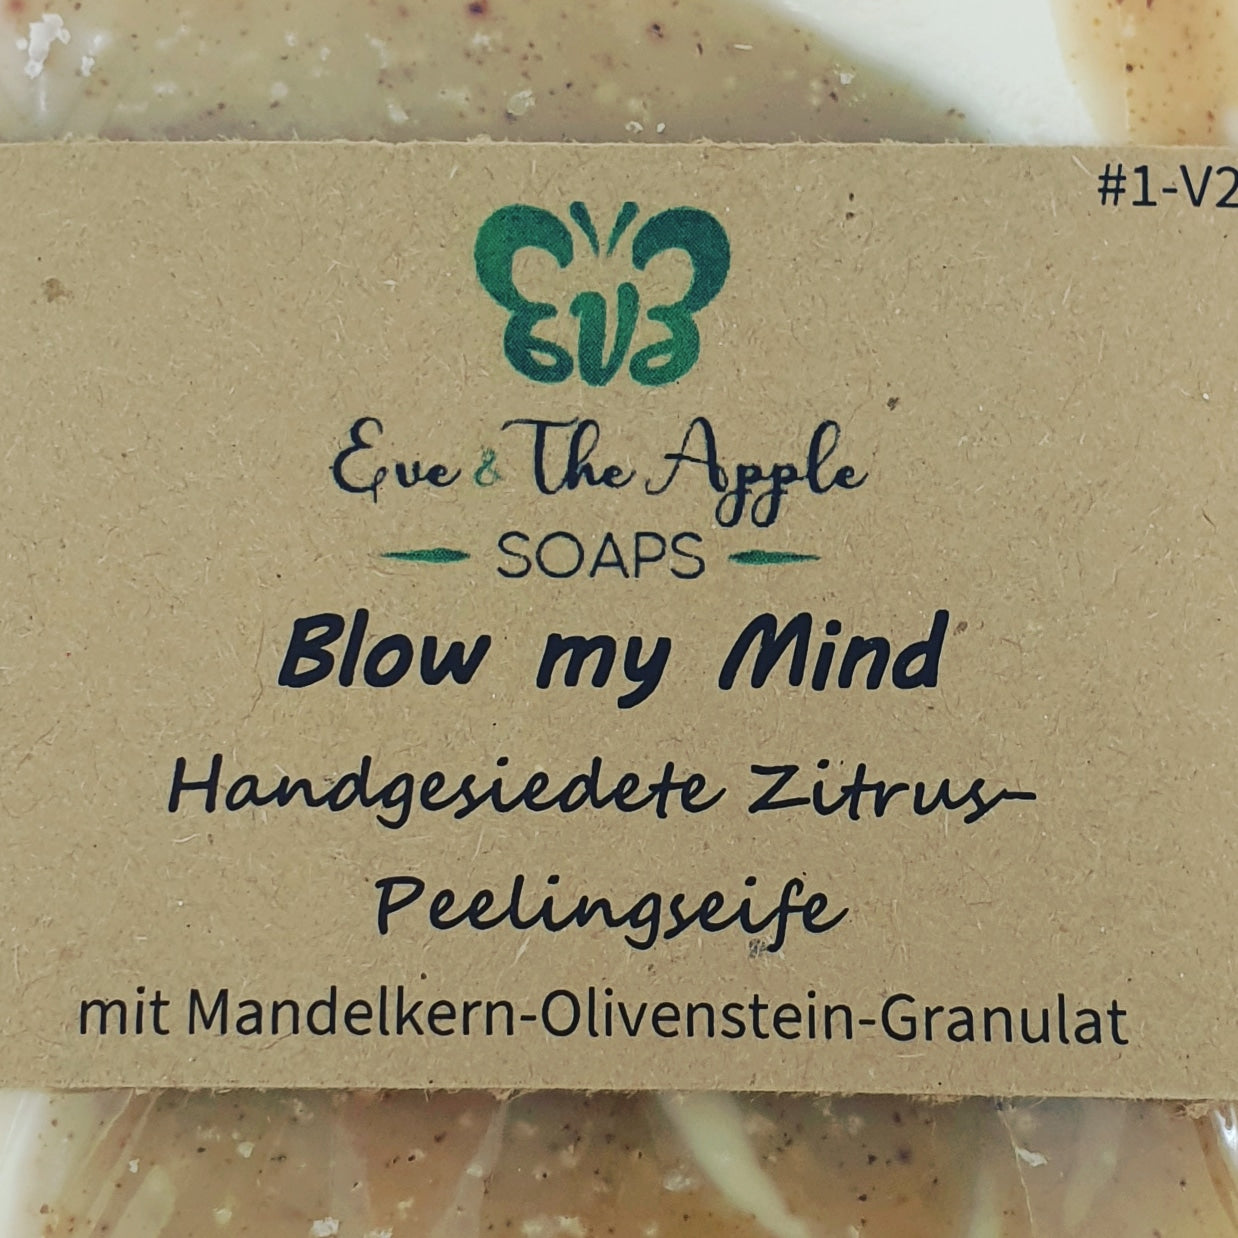 BLOW MY MIND #1-V2 Zitrus-Peelingseife mit Mandelkern-Olivenstein-Granulat, eckig, beduftet, 130 g